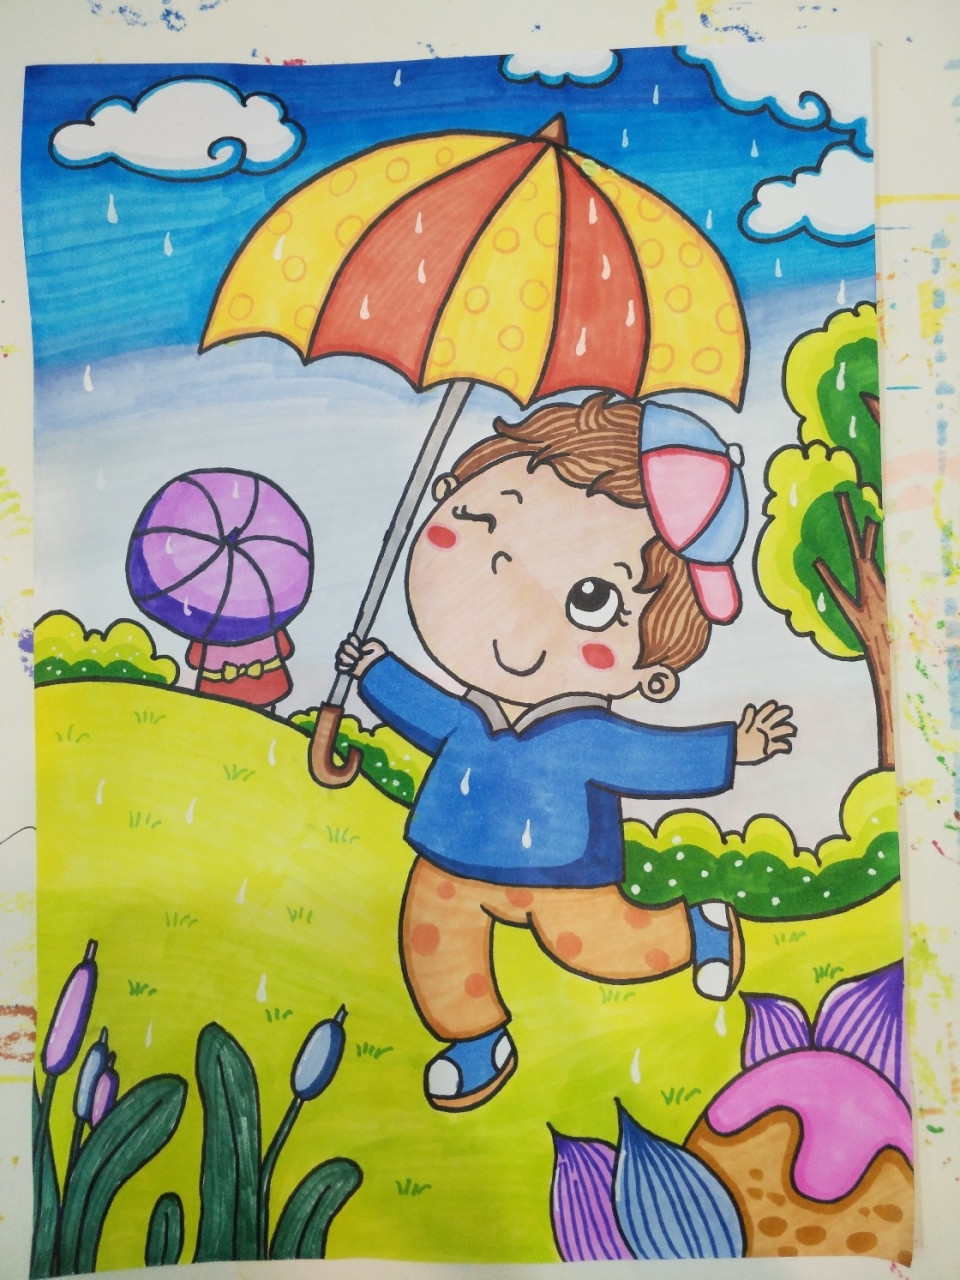 雨伞简笔画 小人图片